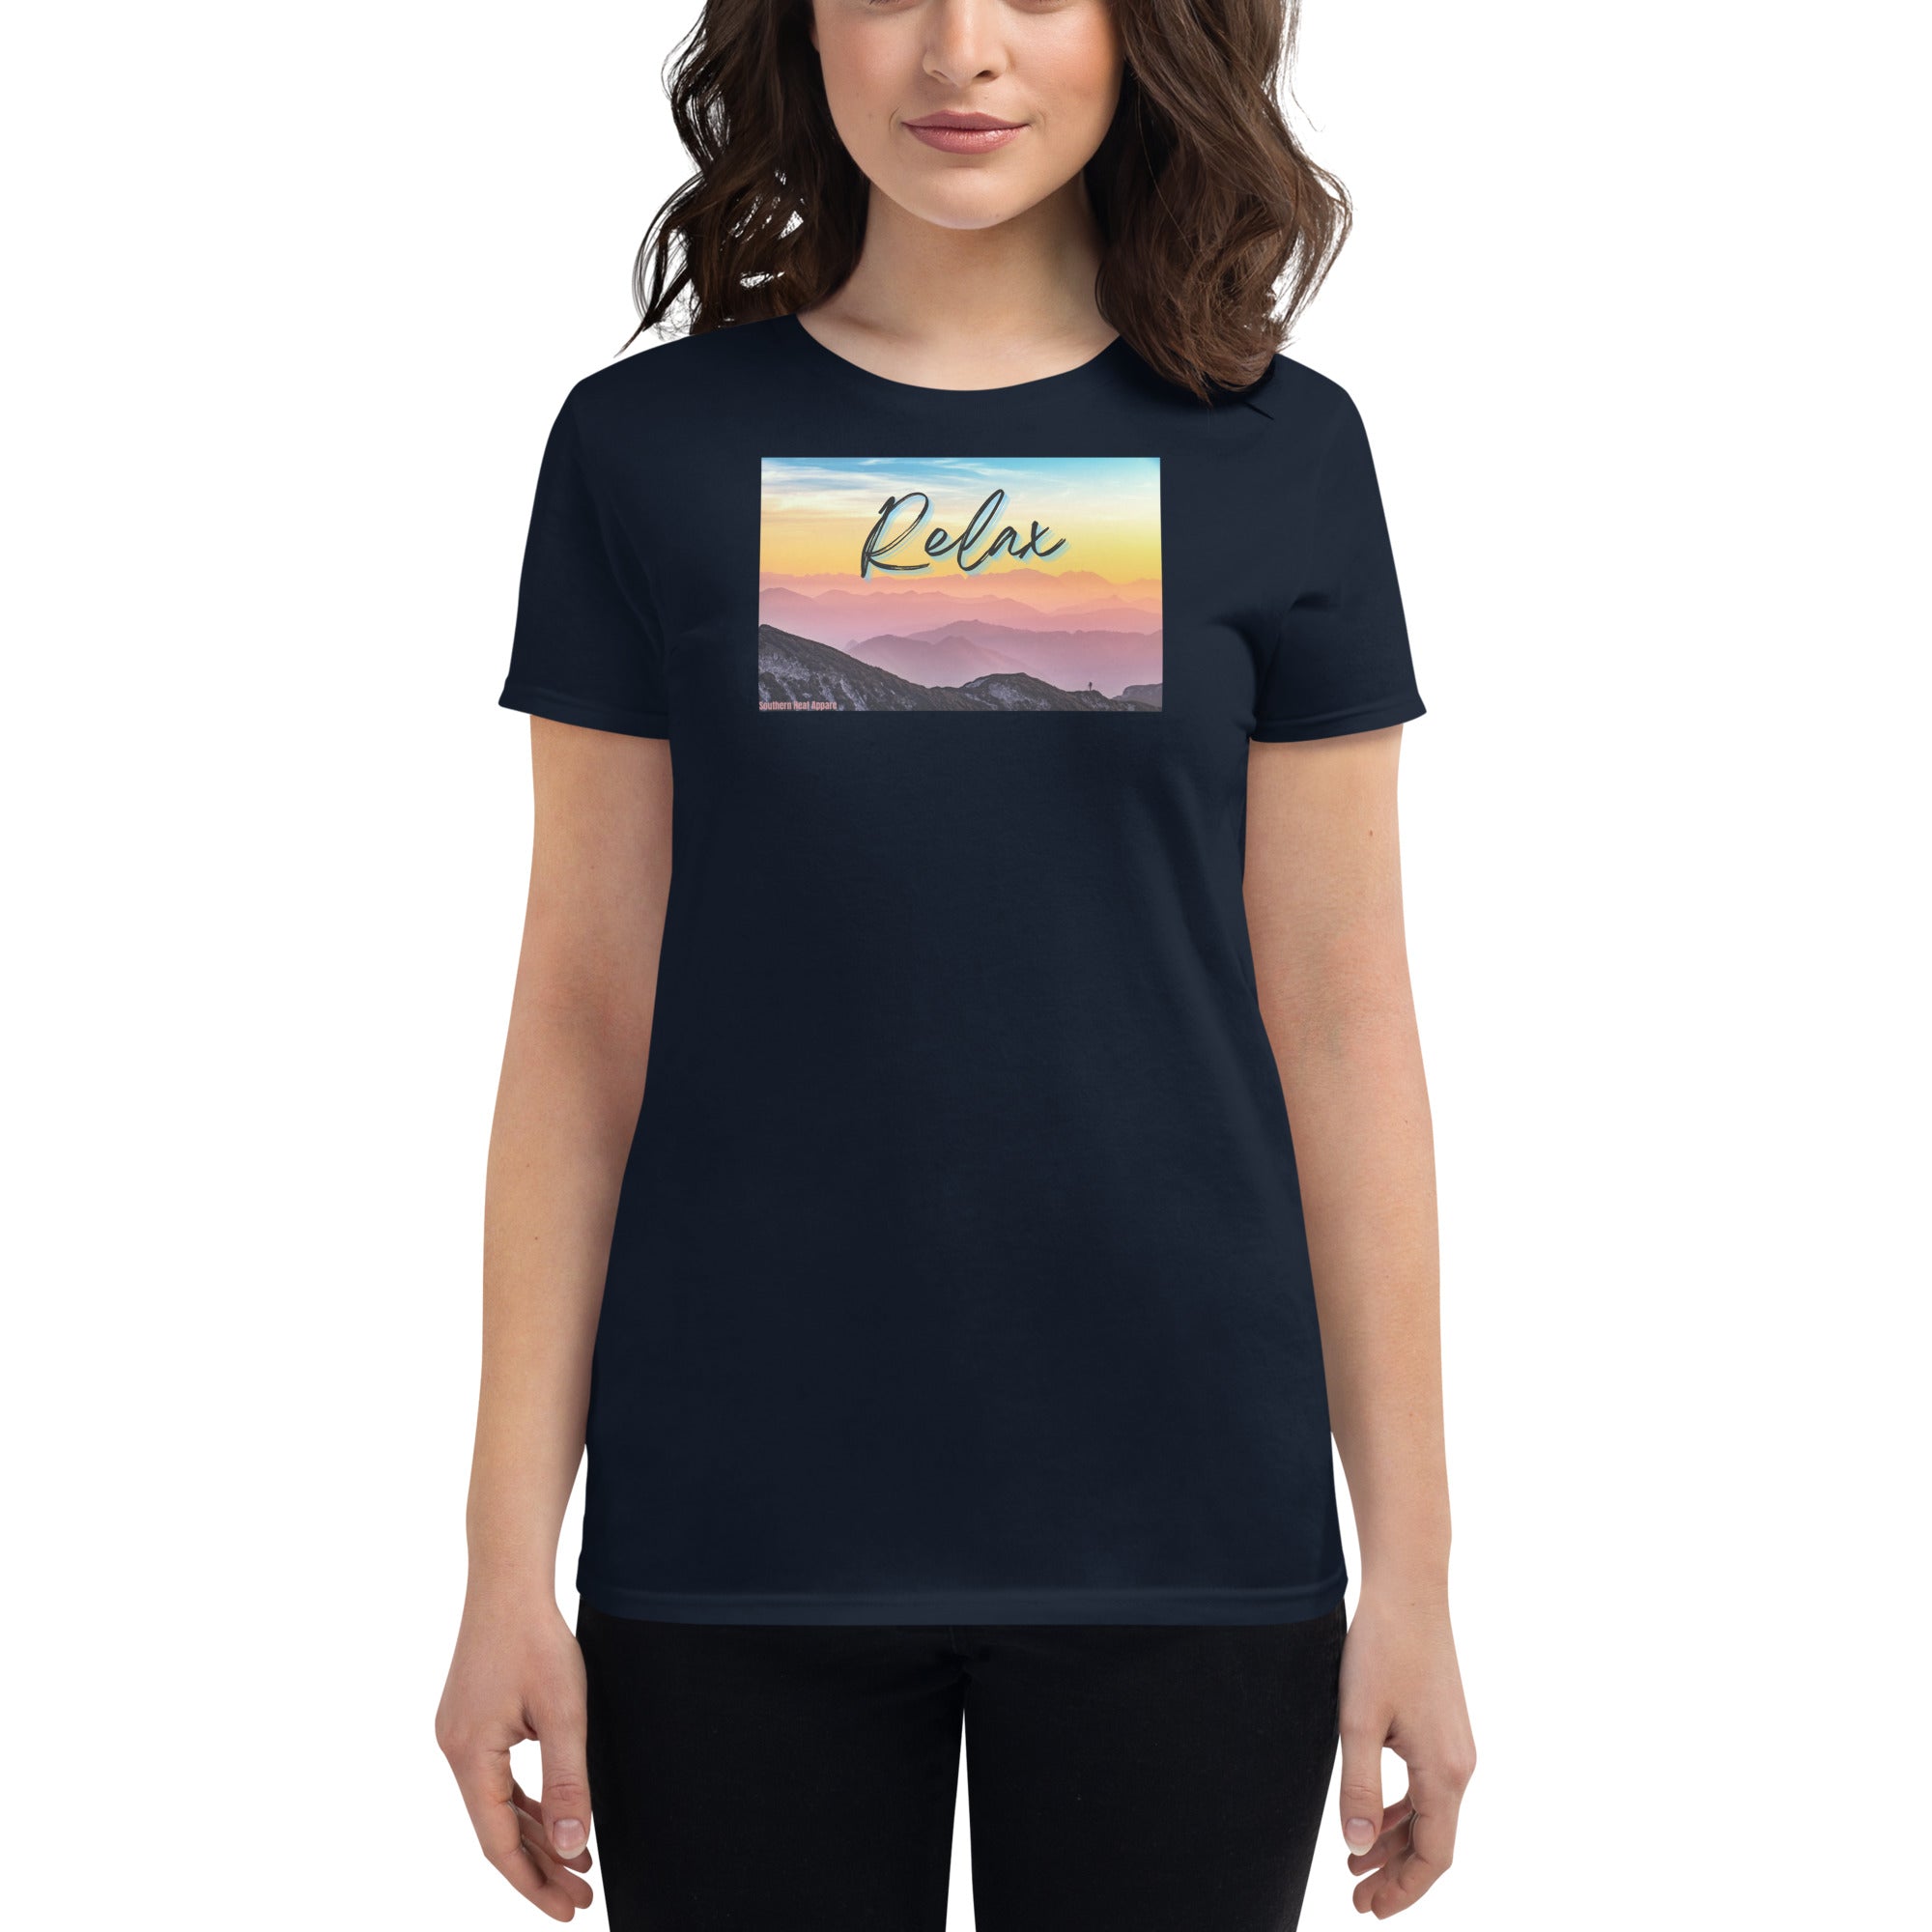 Relax-Women's short sleeve t-shirt